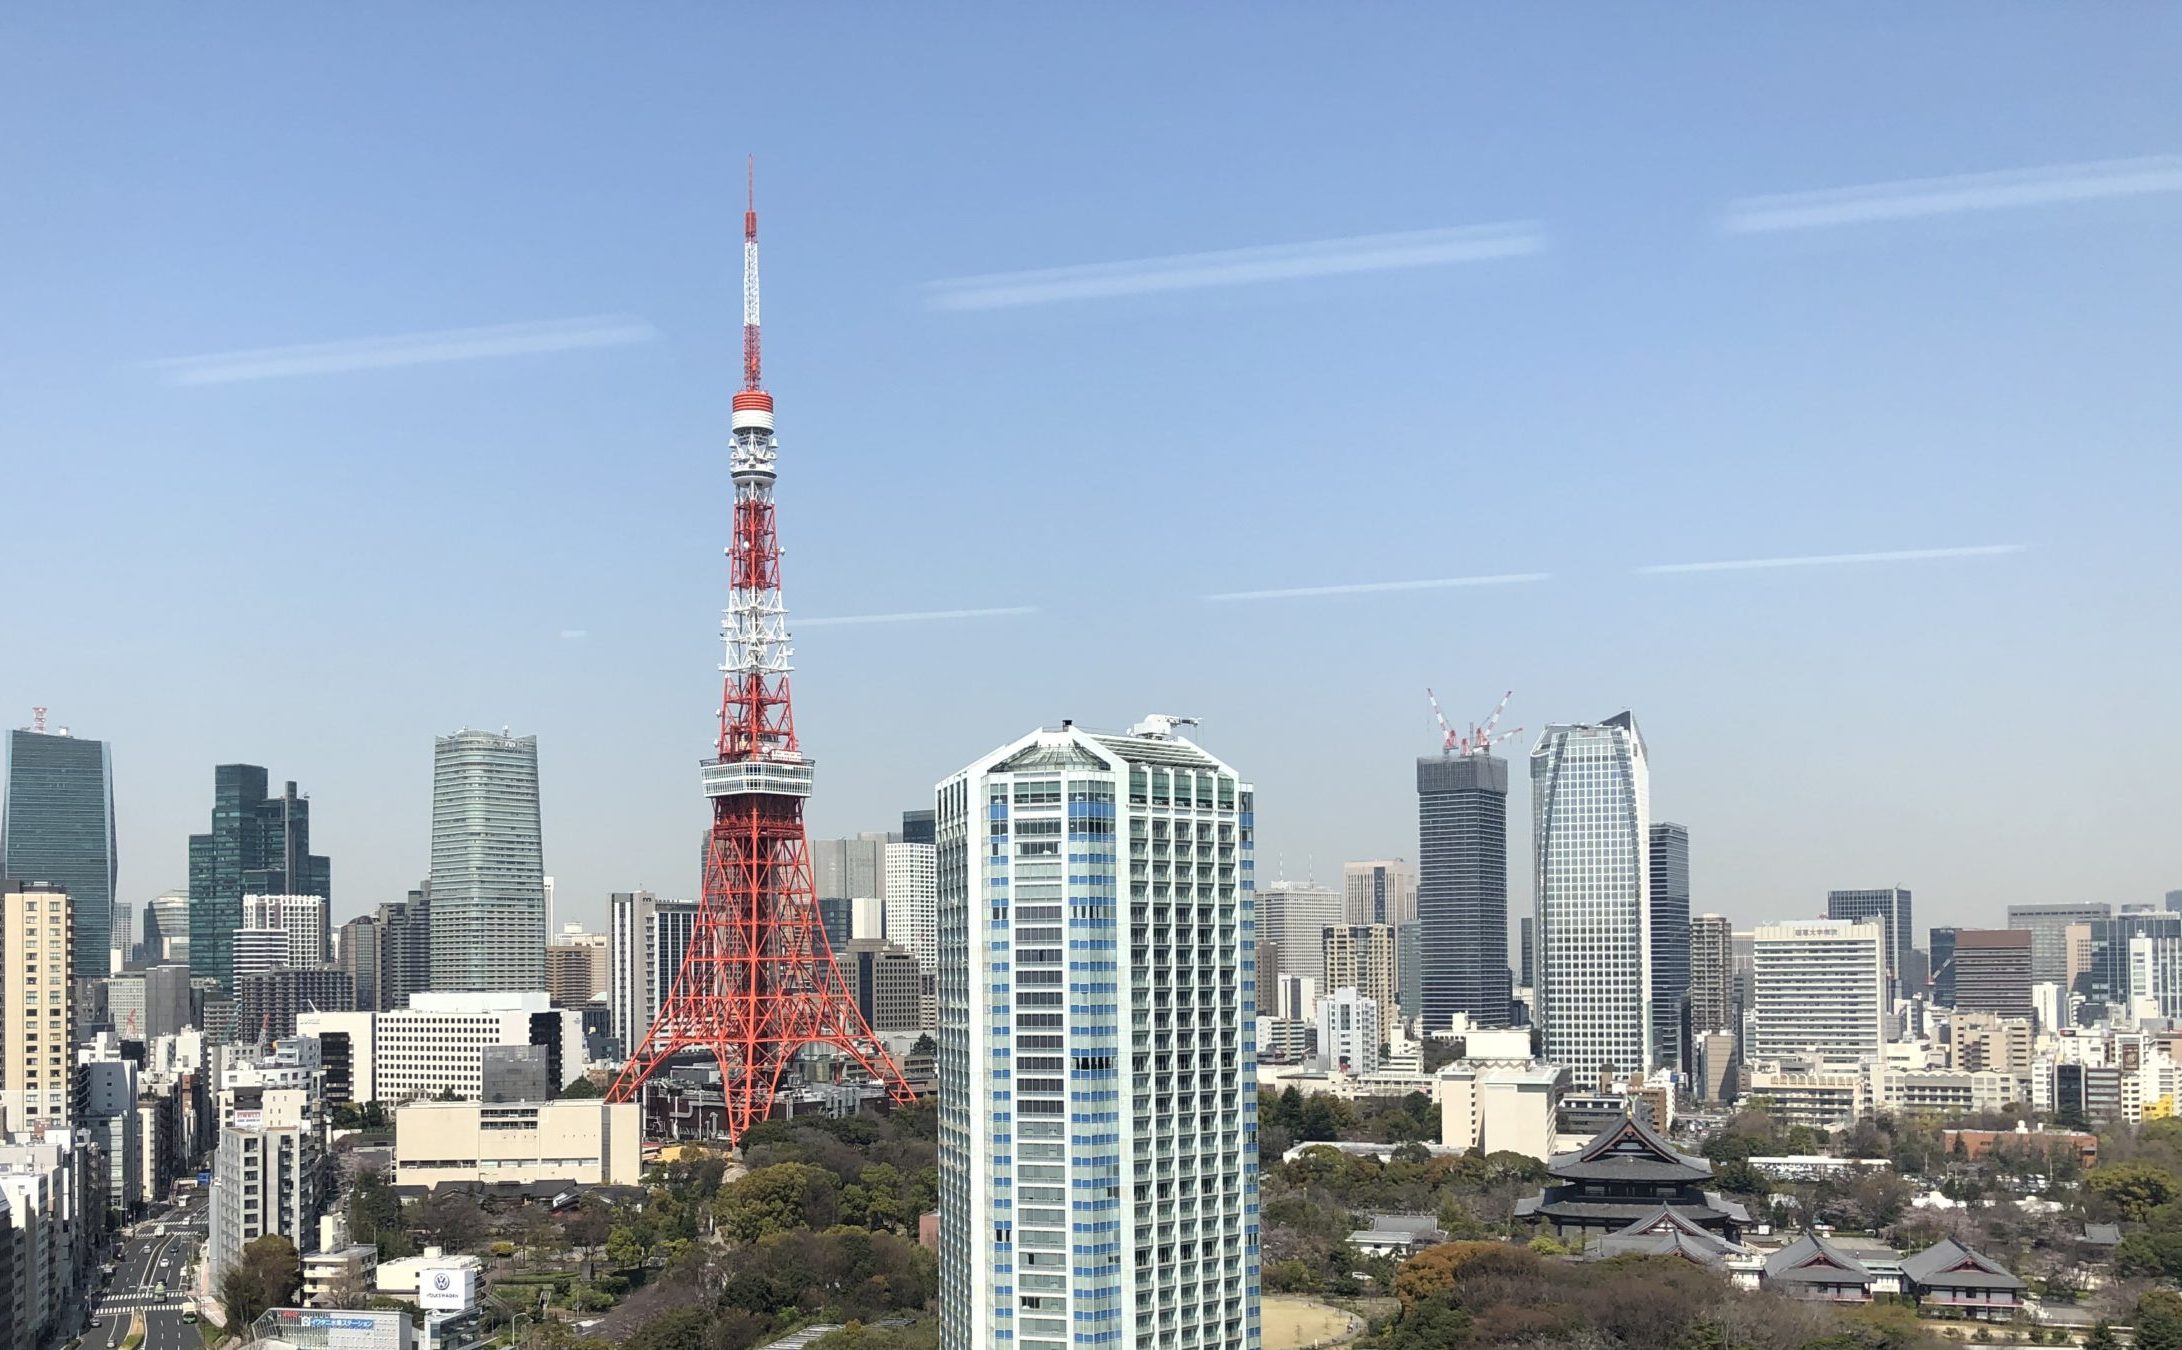 東京タワーと増上寺